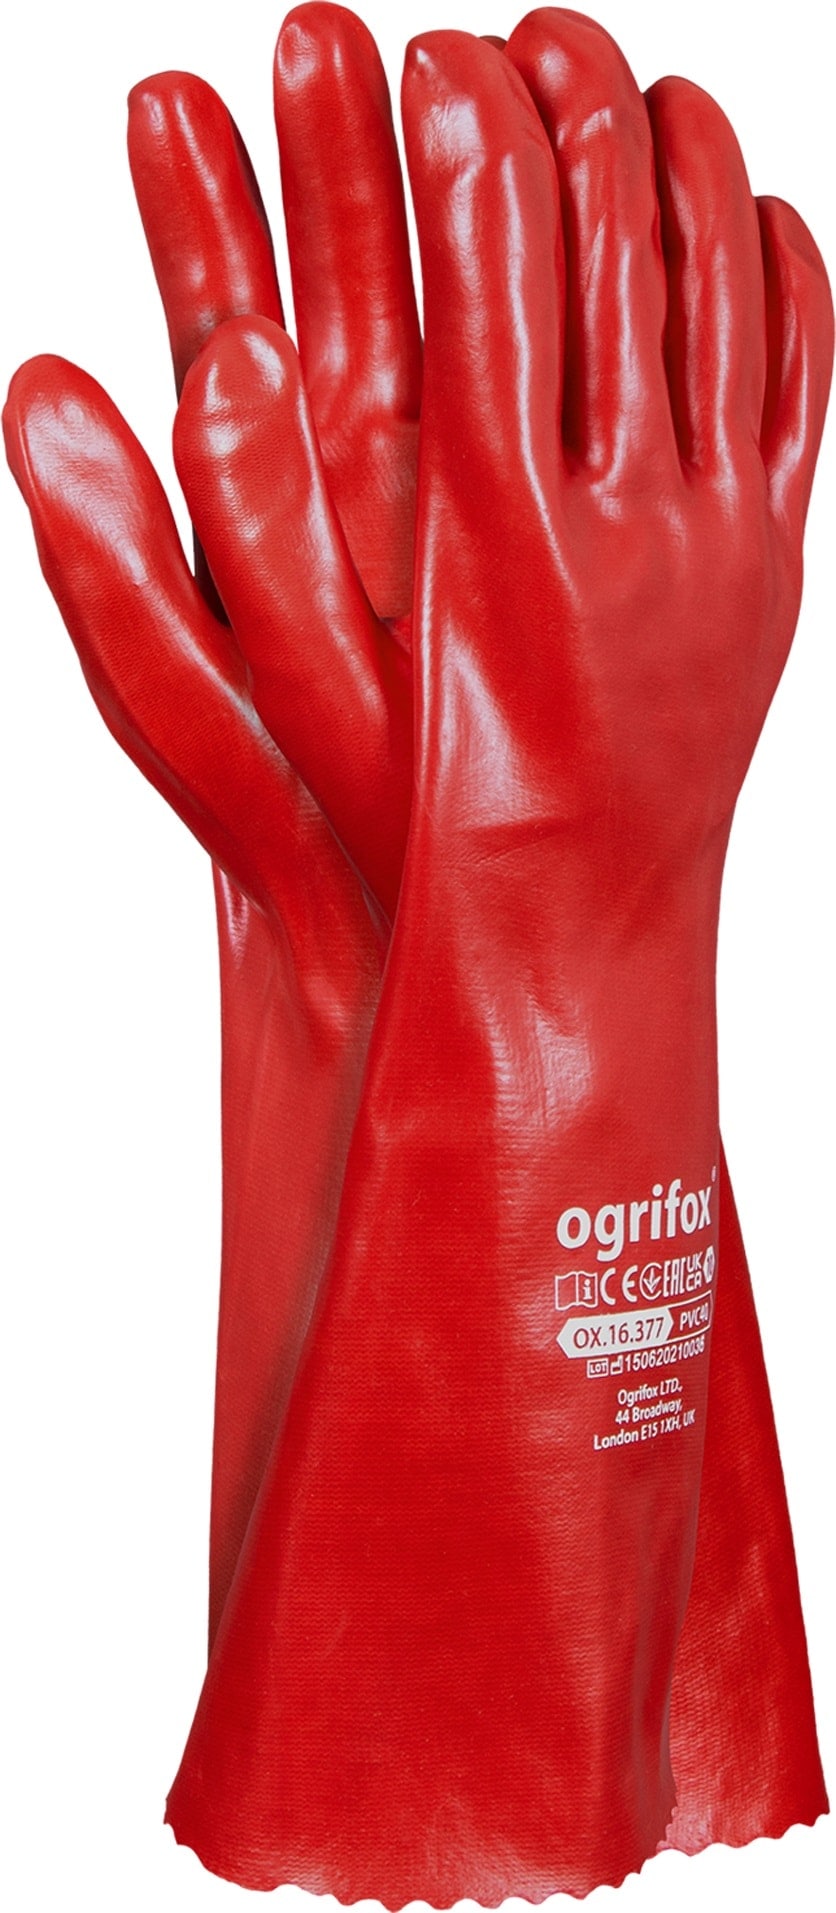 Pracovné rukavice z PVC FOXI 40cm